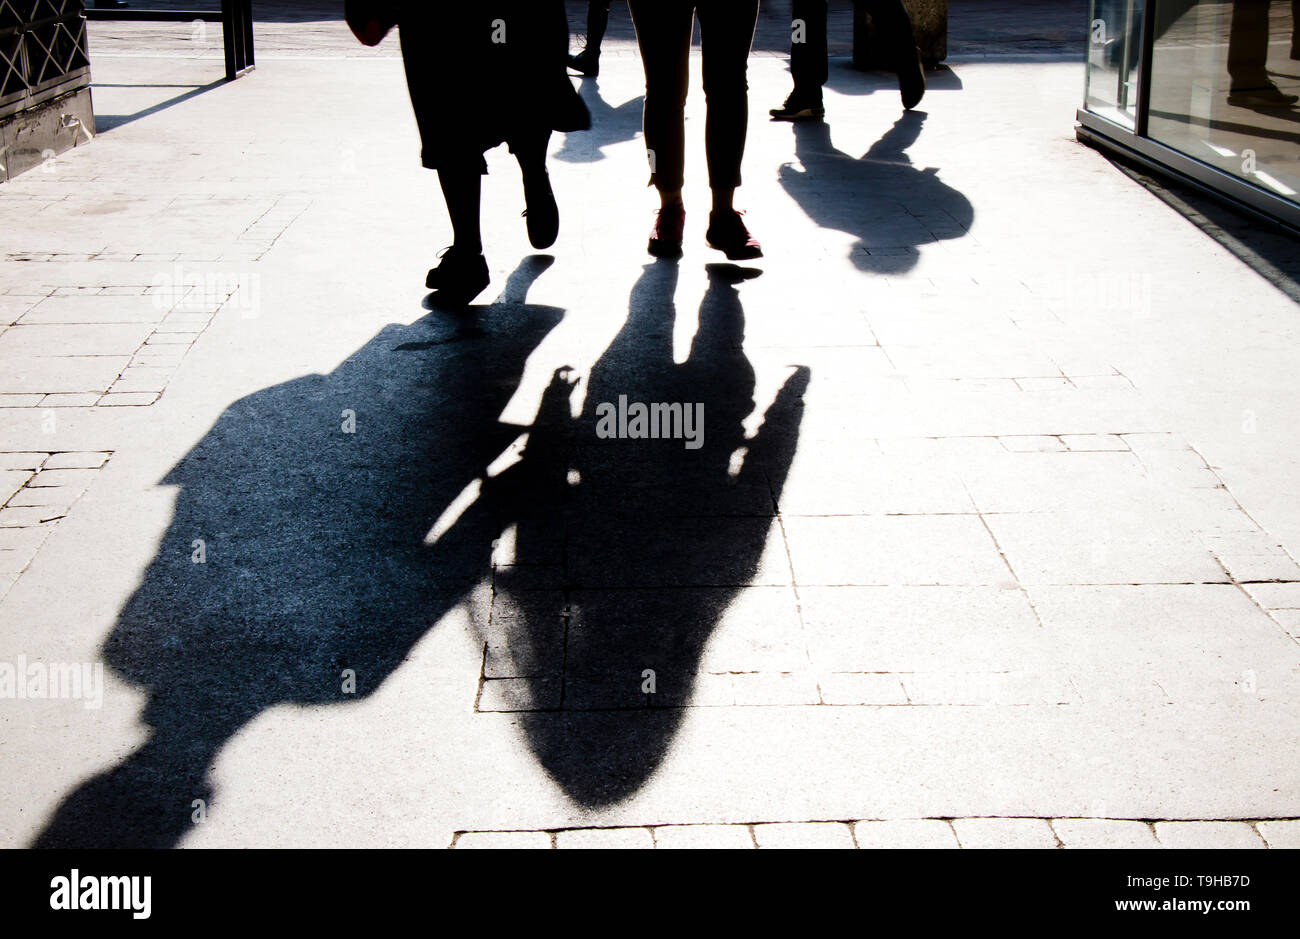 Sfocata ombra silhouette di persone a piedi la città sulla strada pedonale in alto contrasto bianco e nero Foto Stock